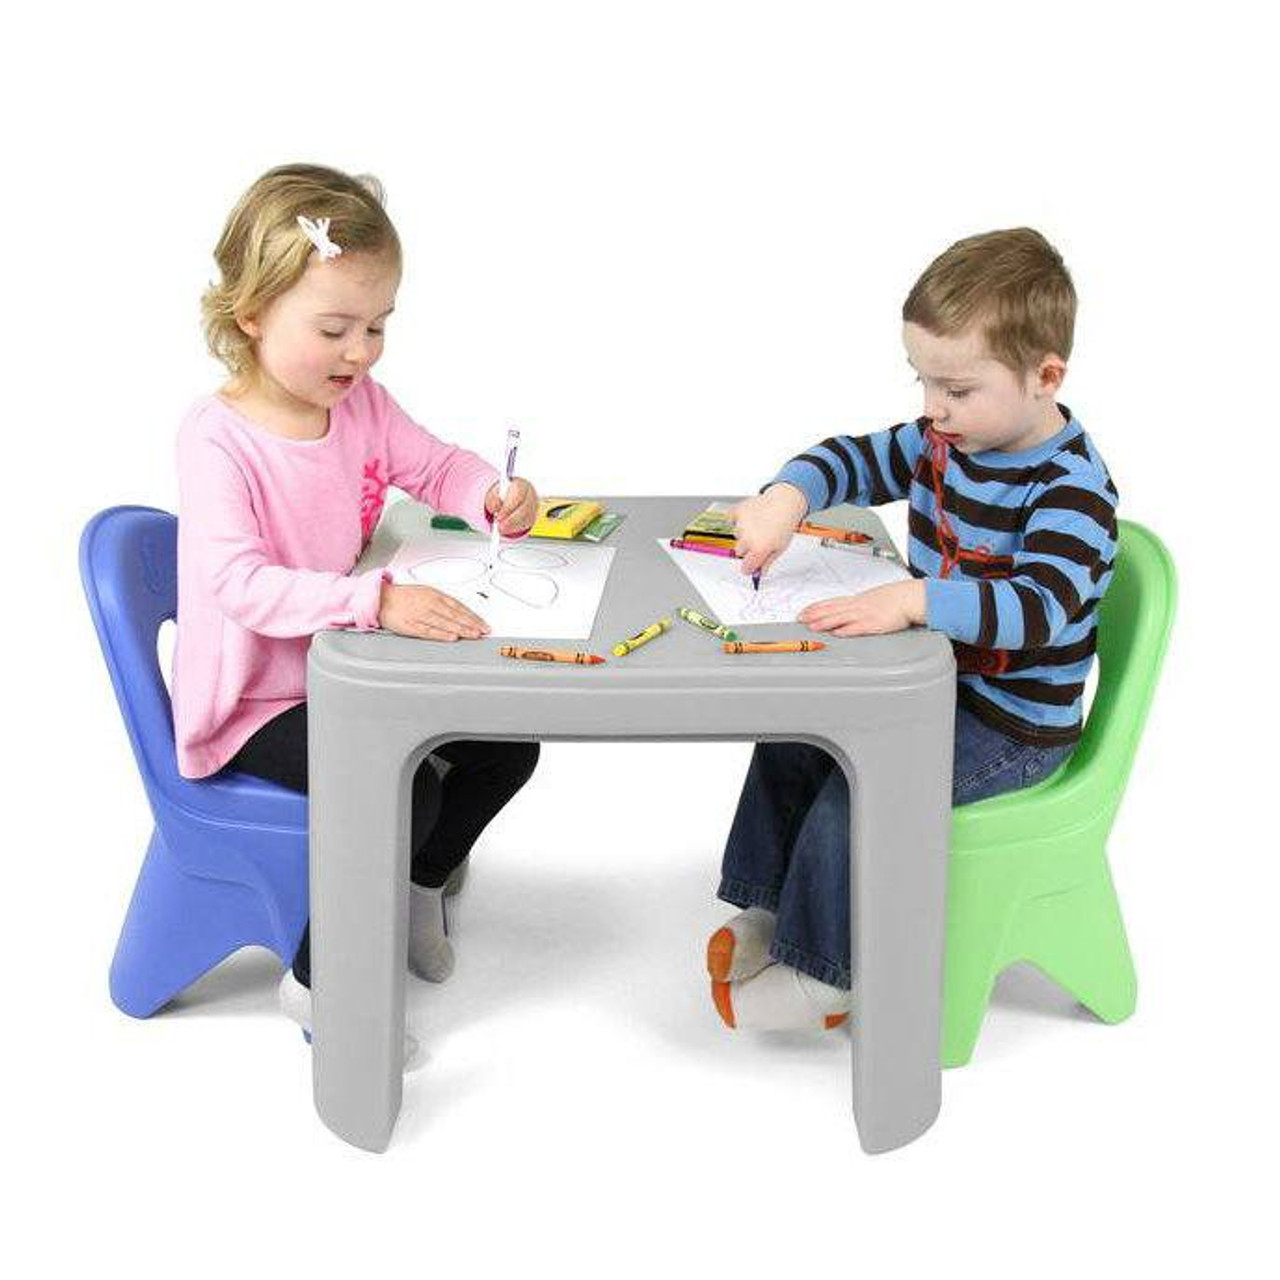 Kids Desks & Desk Chairs